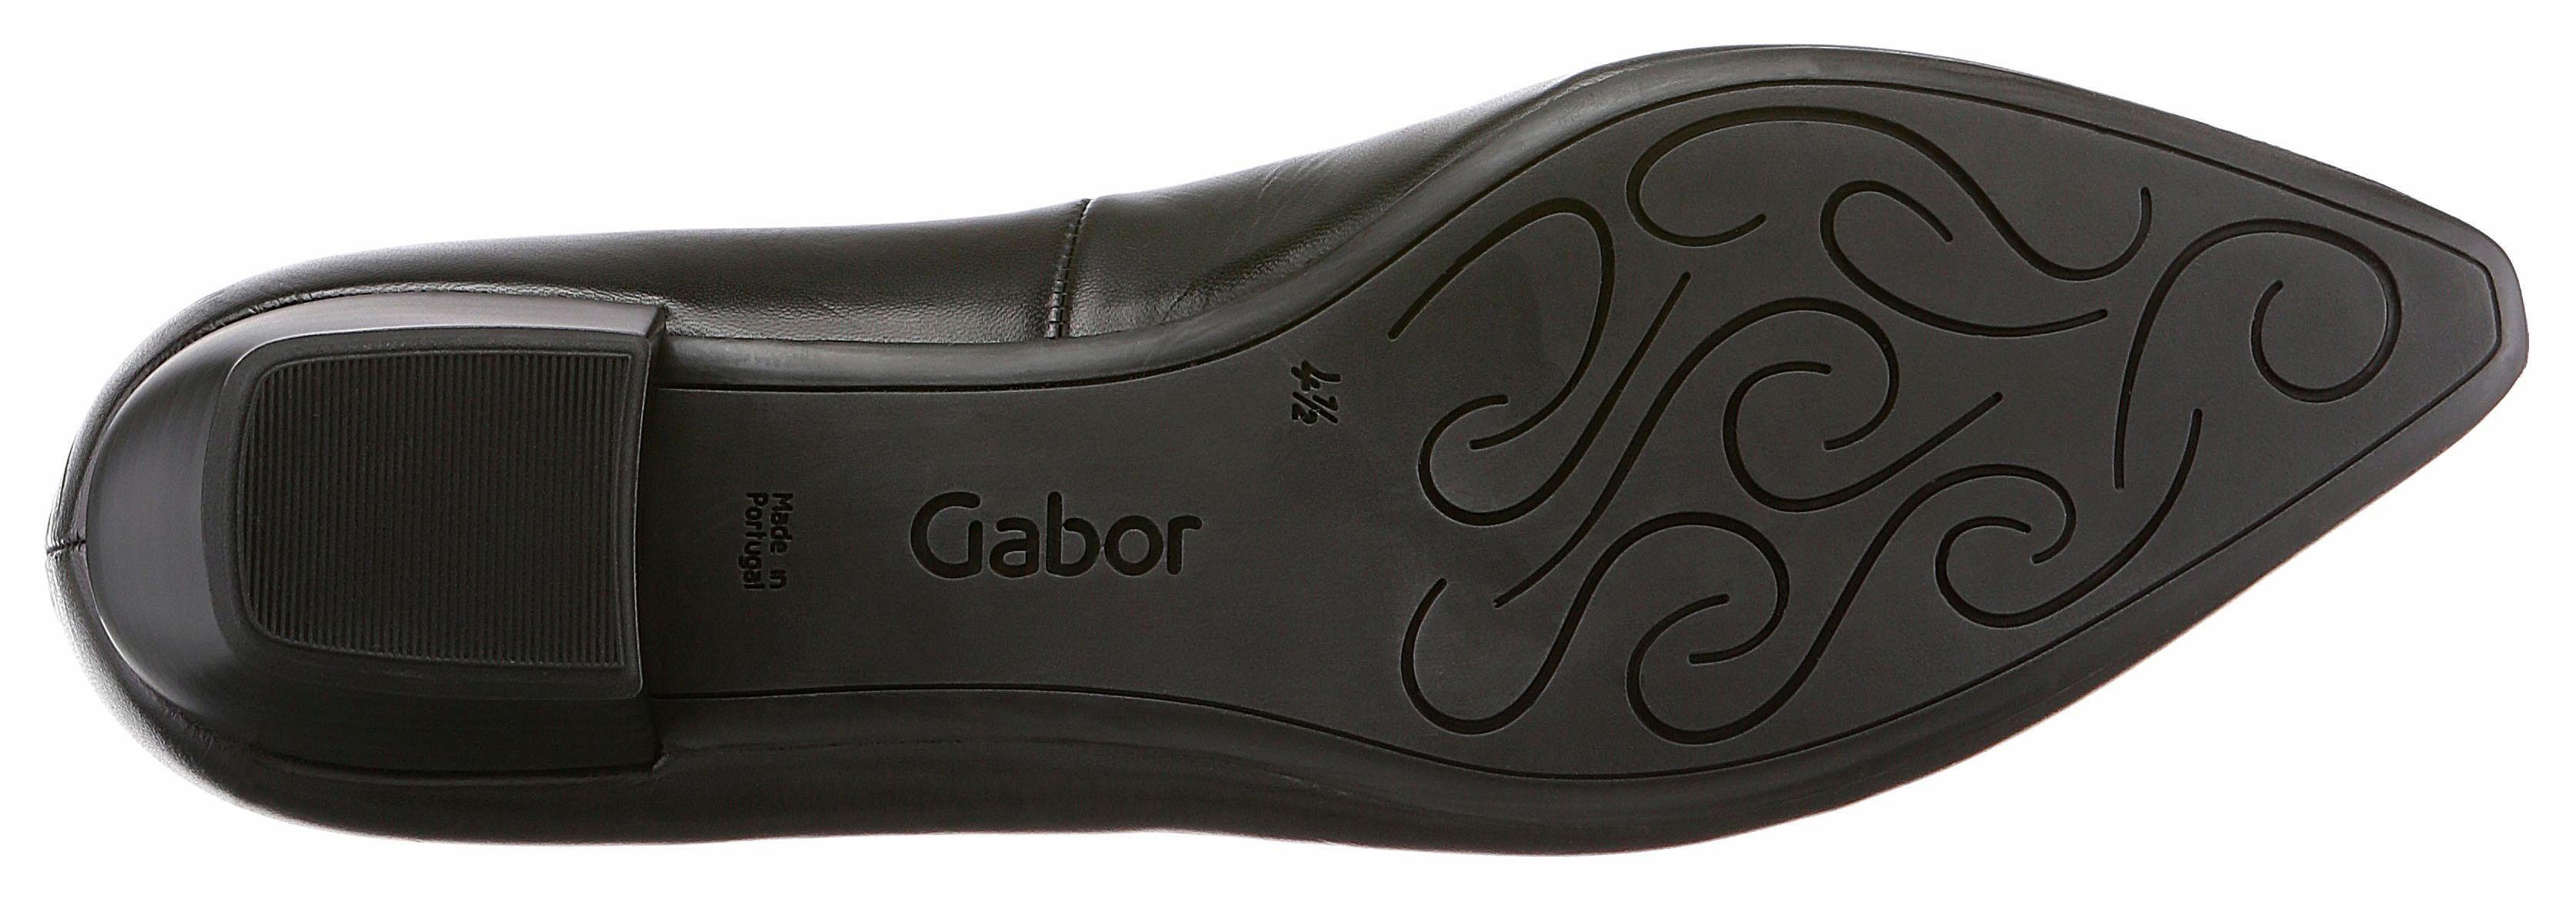 Gabor Pumps mit Karreeform (37) schwarz kleiner